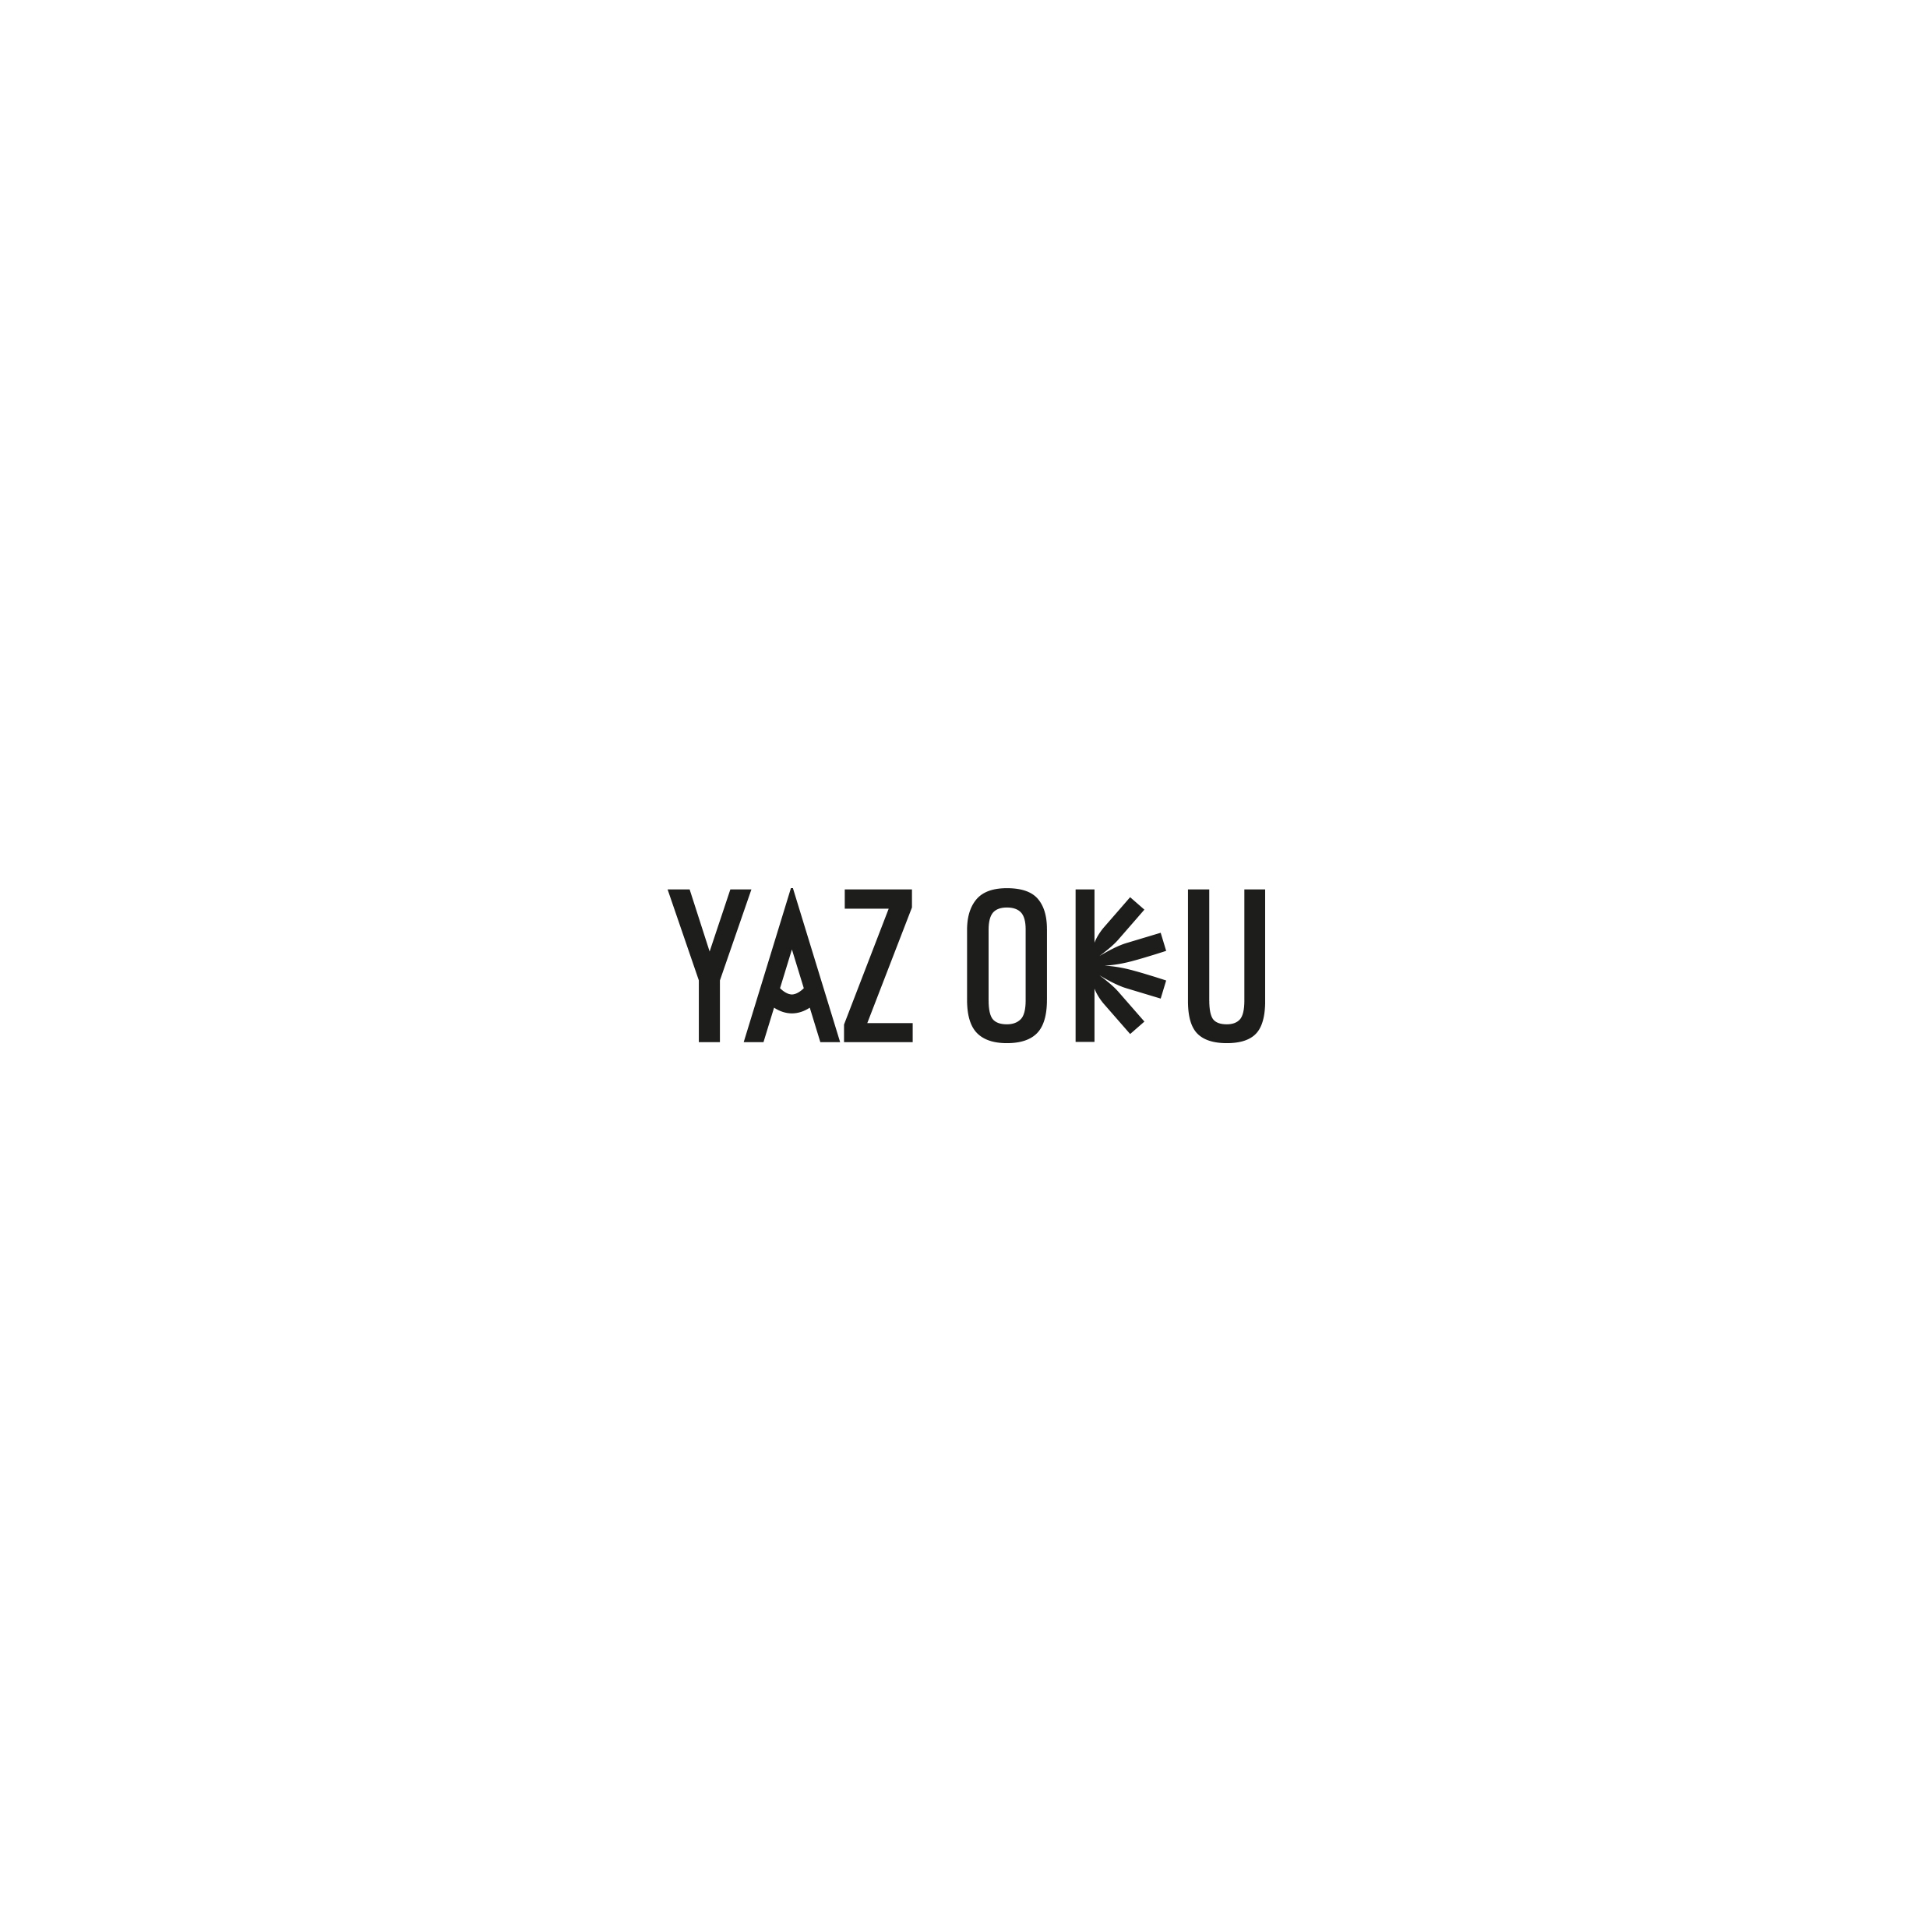 PAPER_YAZ_OKU_02